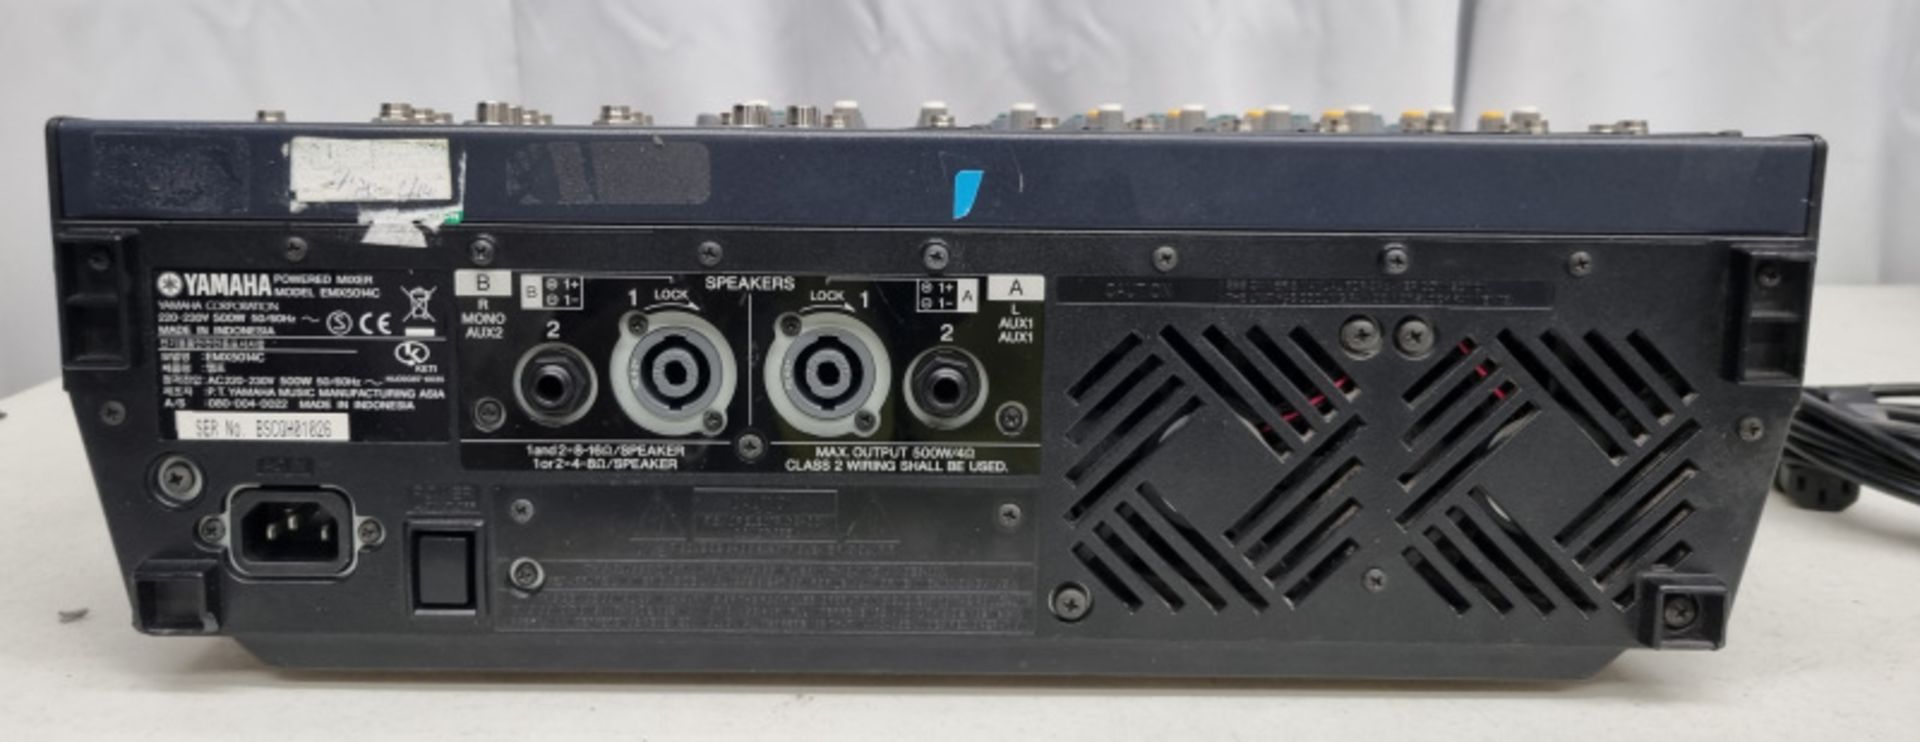 Yamaha EMX 5014C mixer in flight case - Image 3 of 5